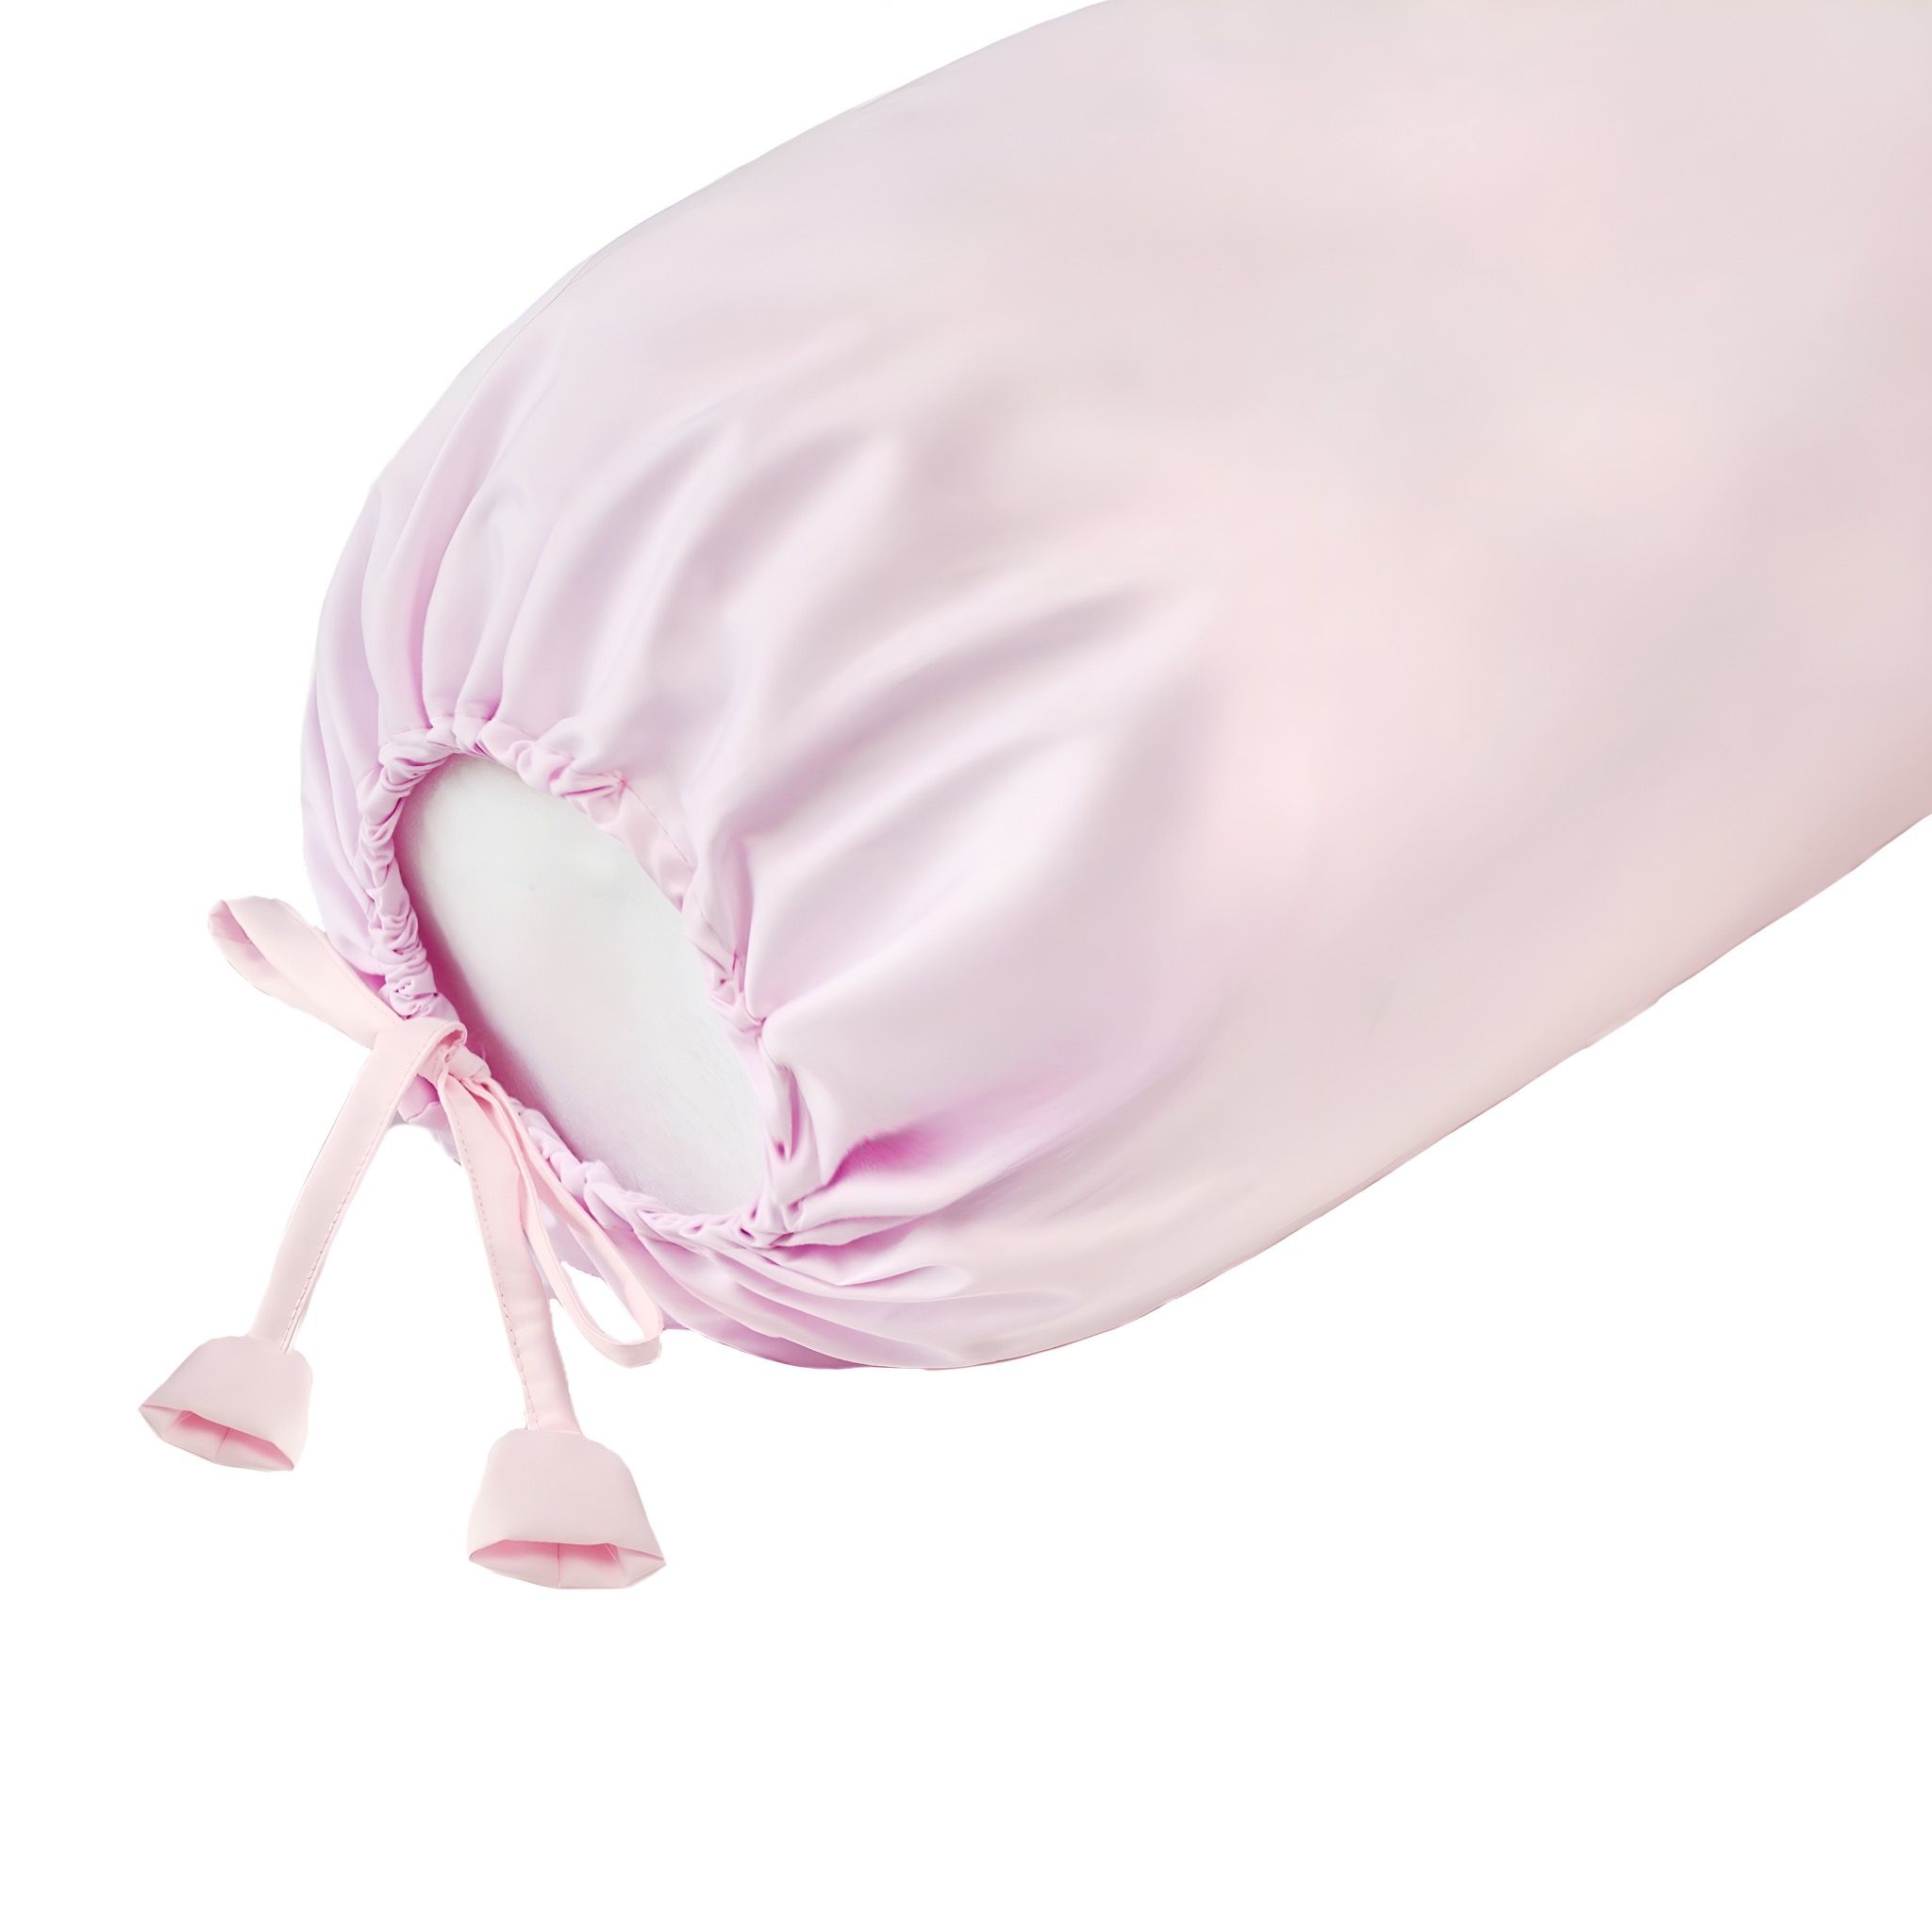  Vỏ gối ôm Premium Cotton hồng phấn 